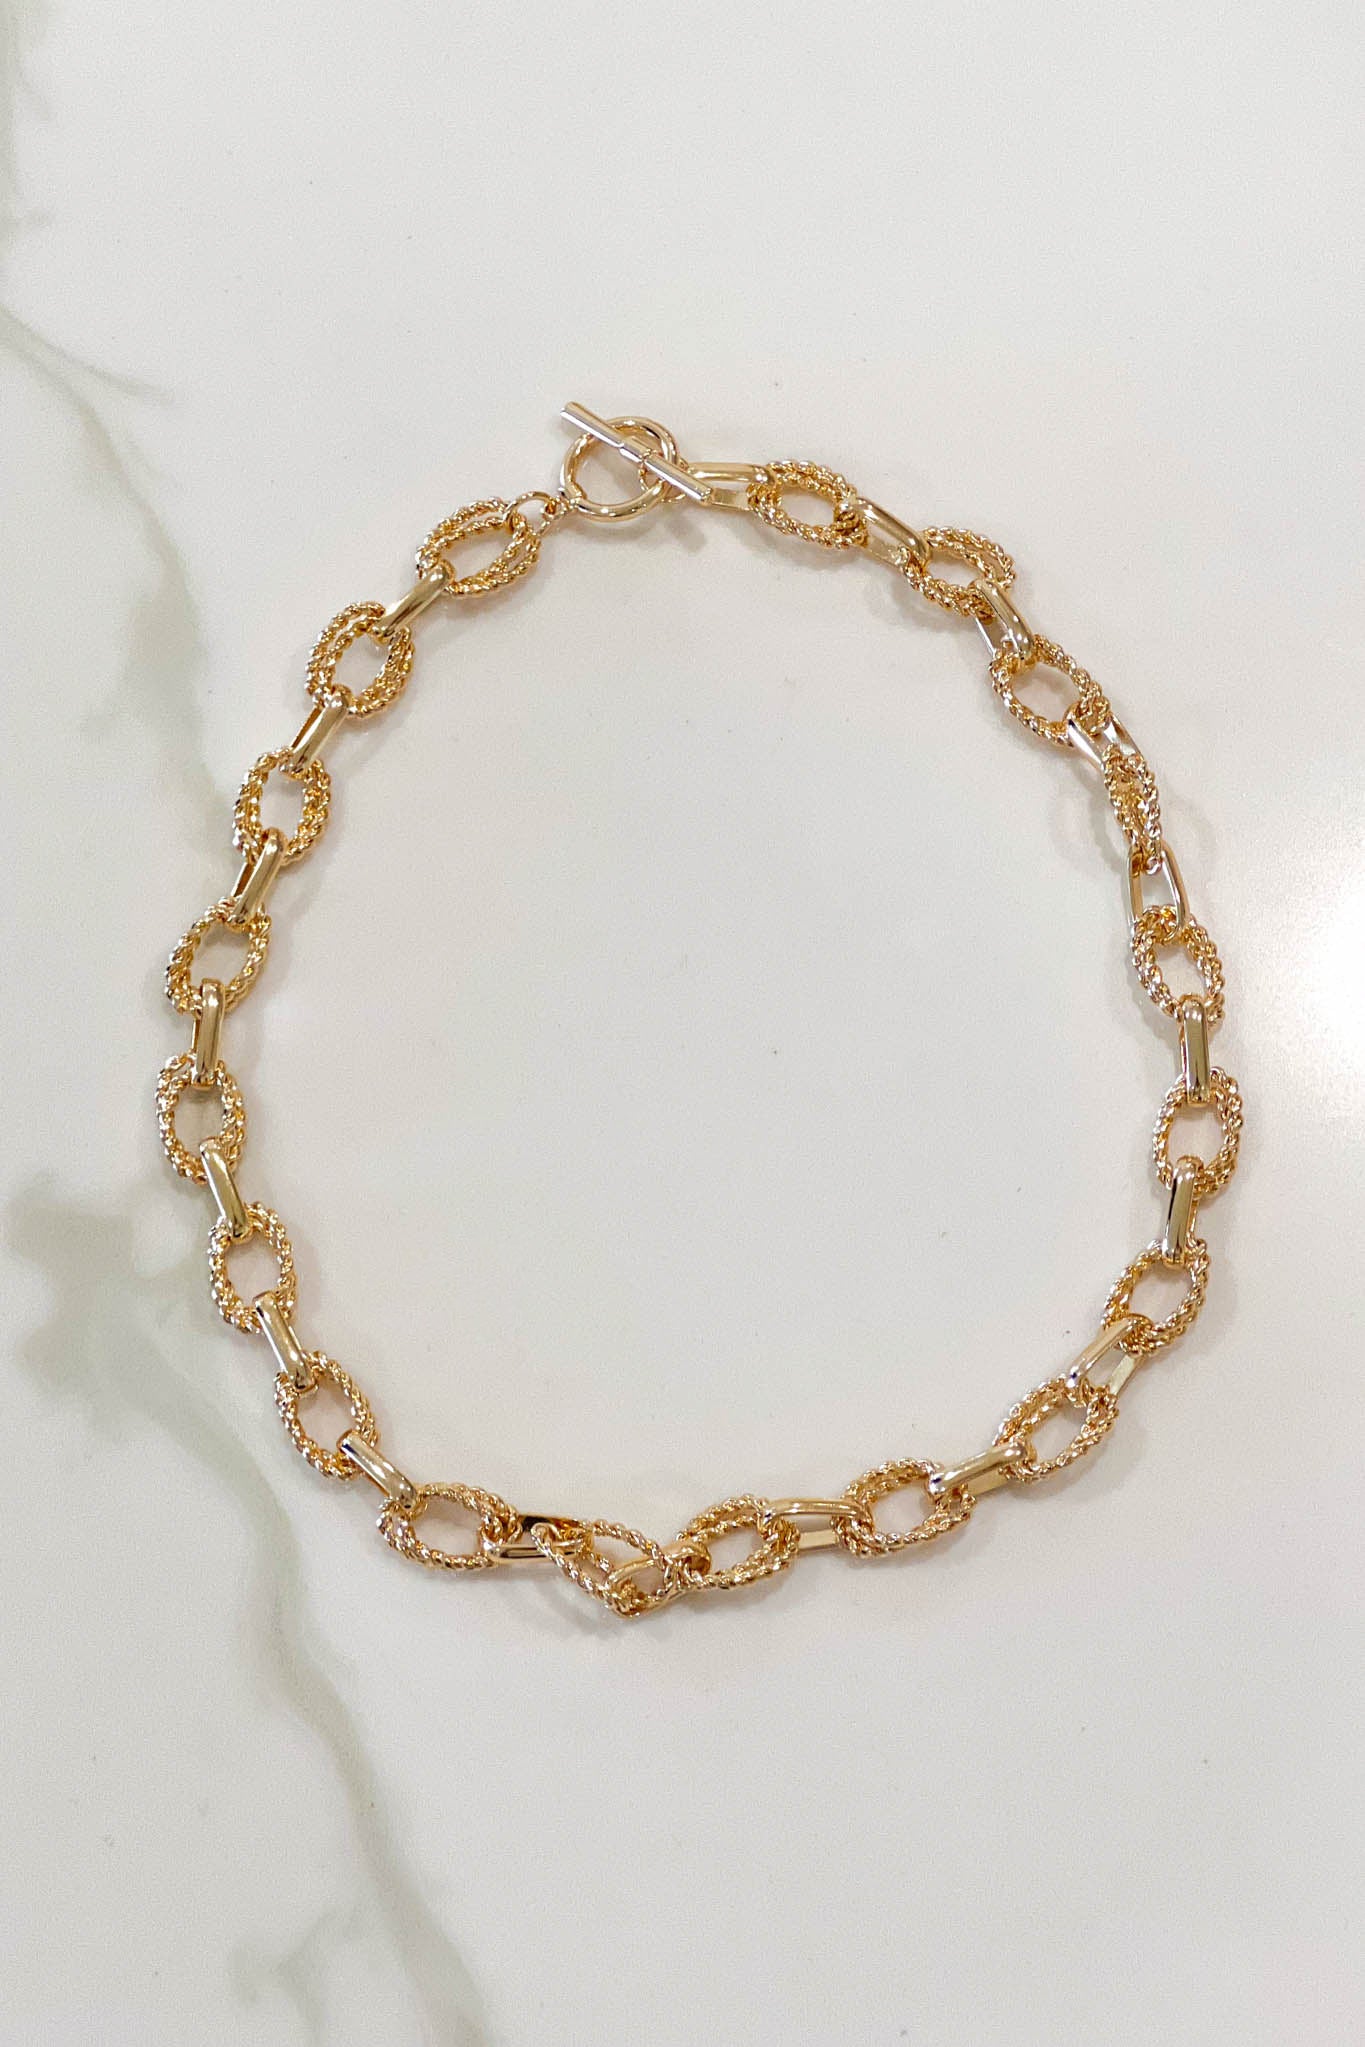 gold plain link chain necklace